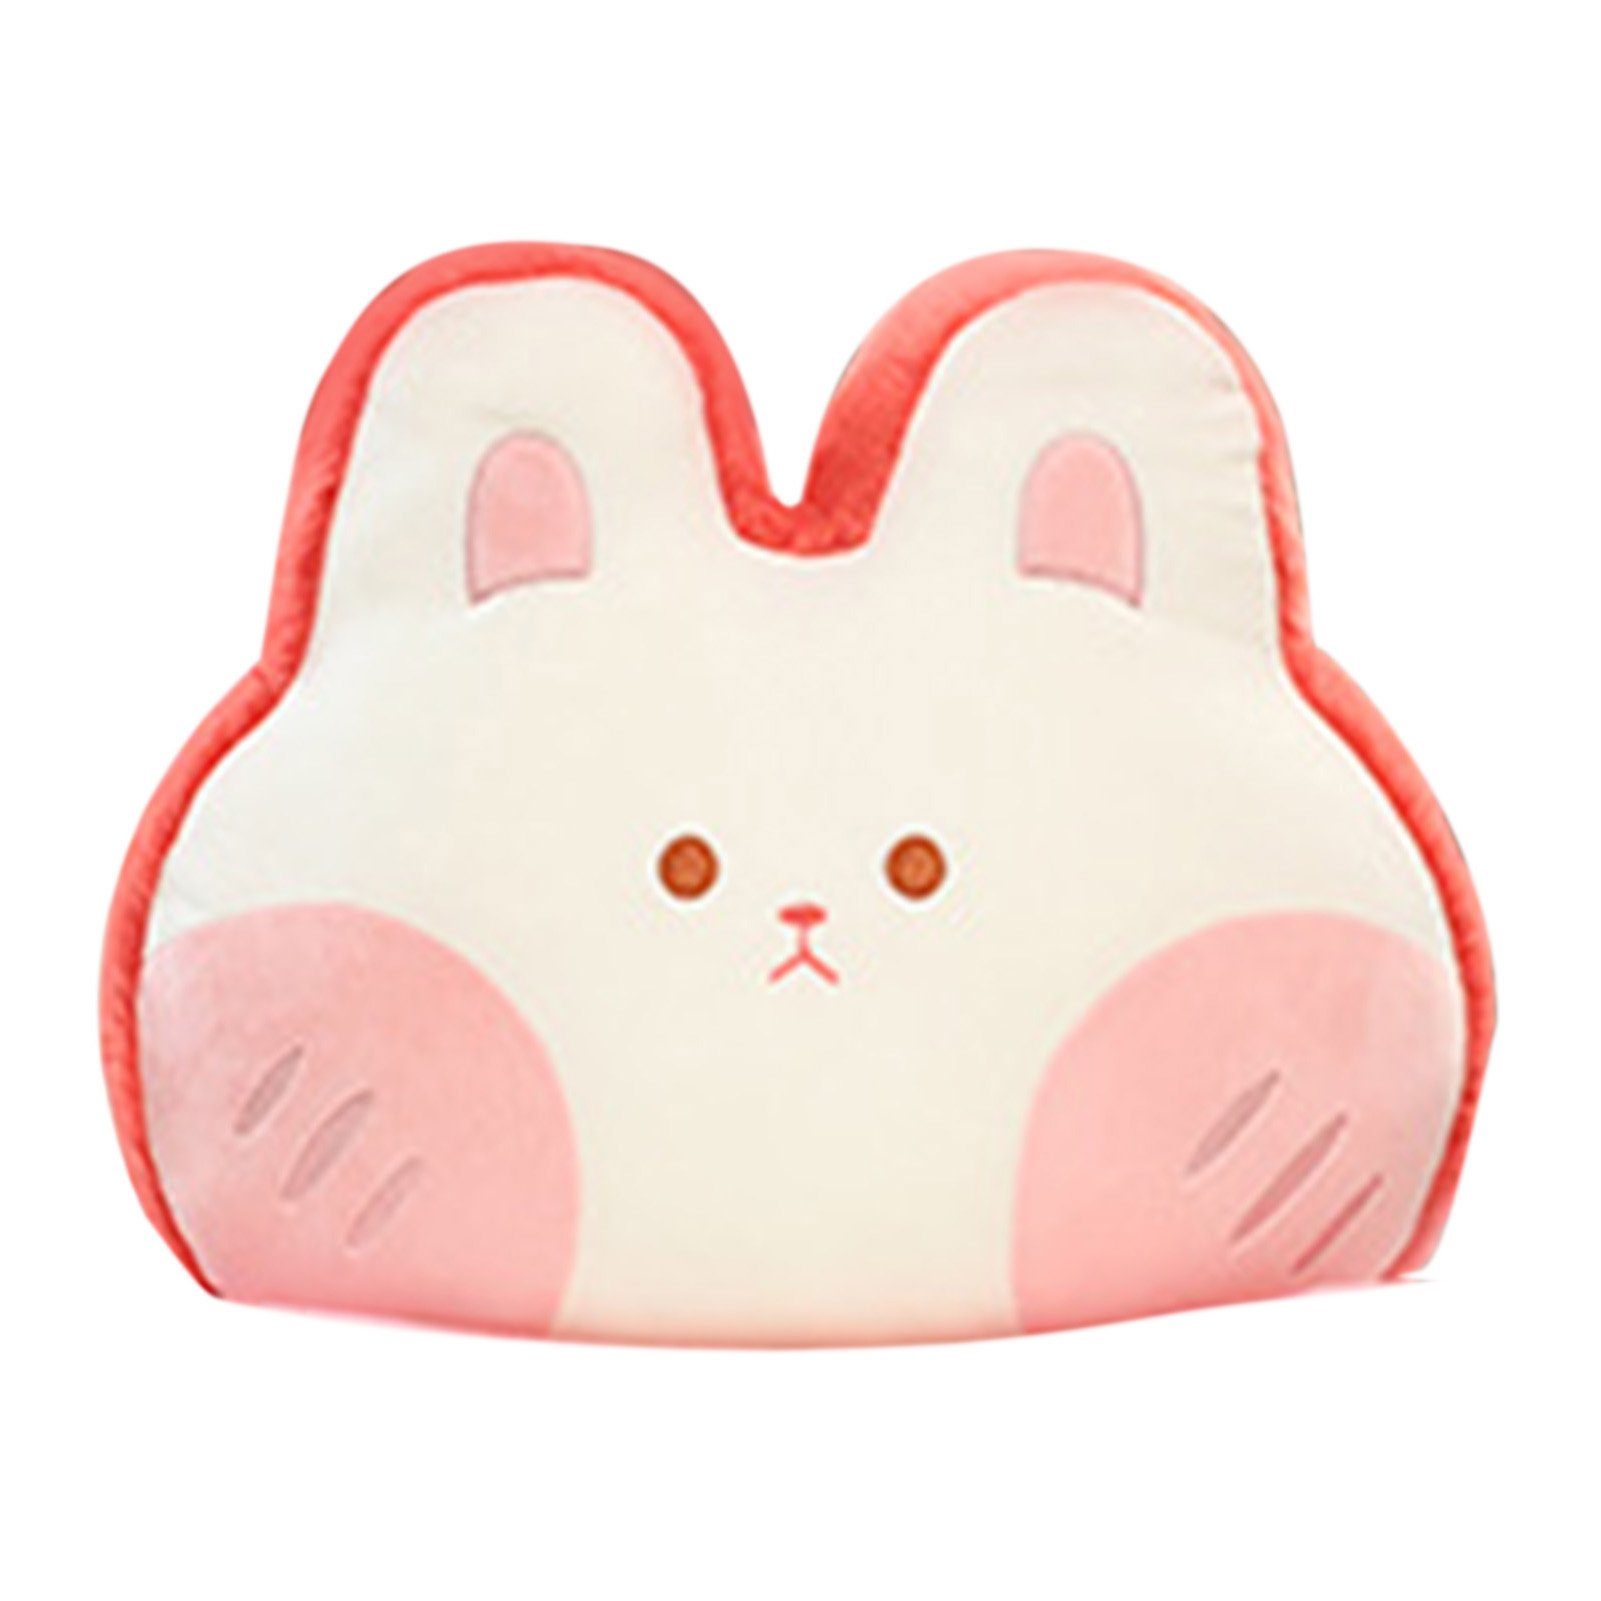 rot 40x30cm Dekohänger Kissen (1 Spielzeug Kissen Tierform Kaninchen St) Wassermelone Runxizhou